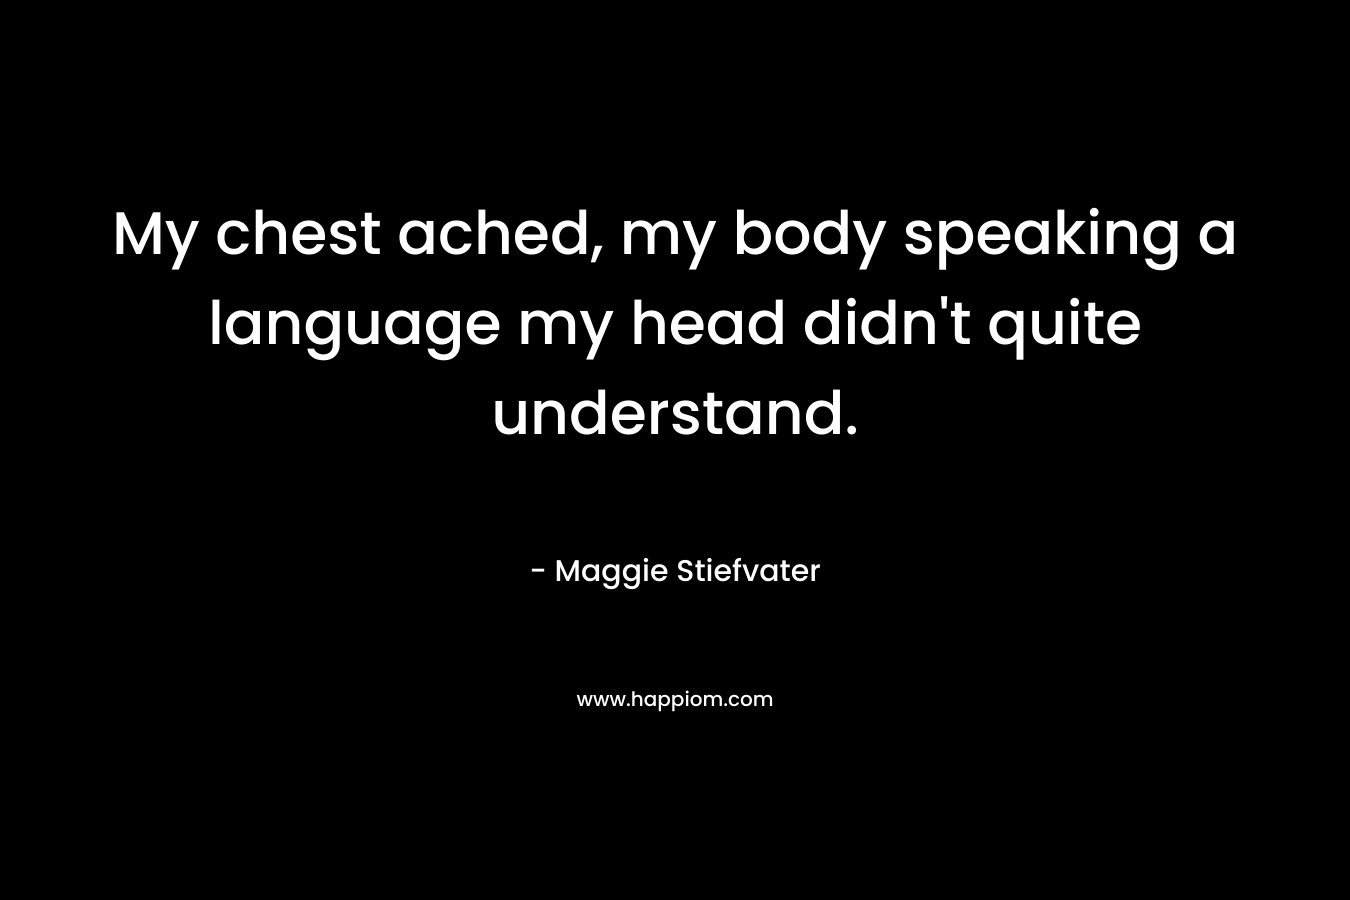 My chest ached, my body speaking a language my head didn’t quite understand. – Maggie Stiefvater